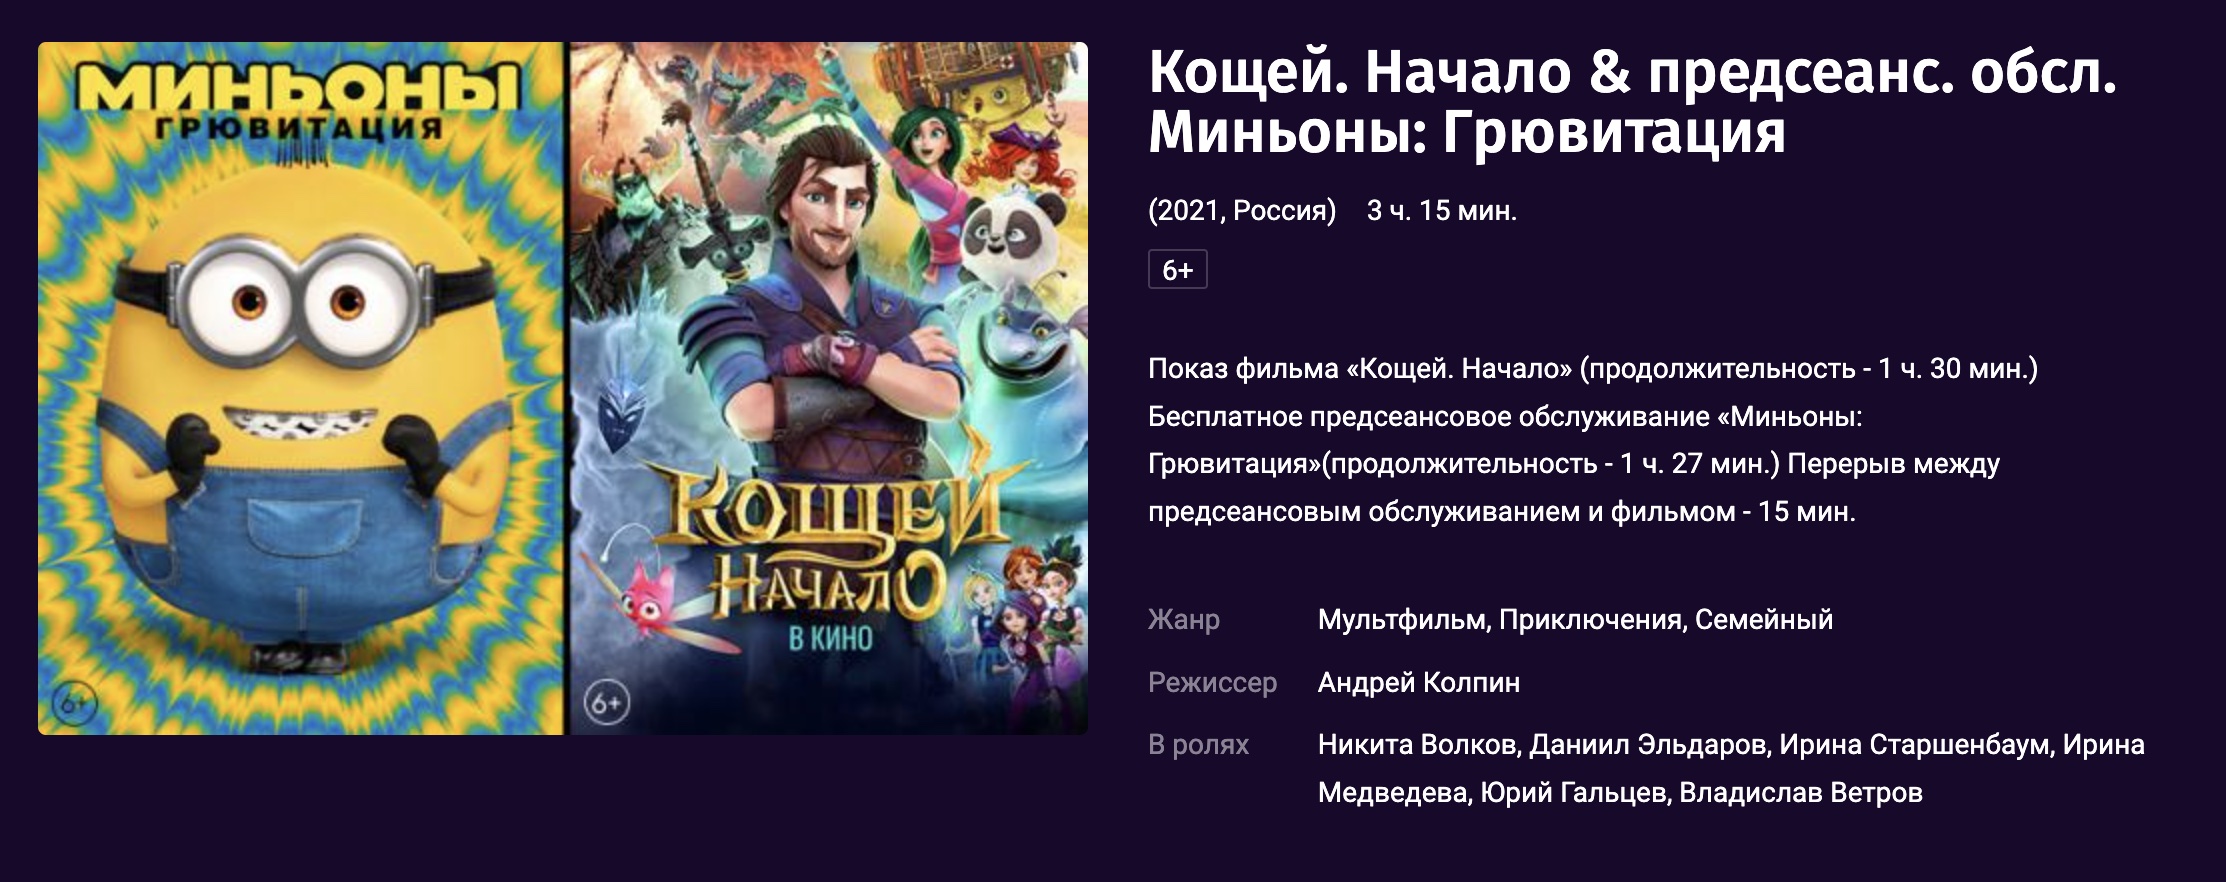 «Миньоны 2: Грювитация» вышли в кинотеатрах Москвы